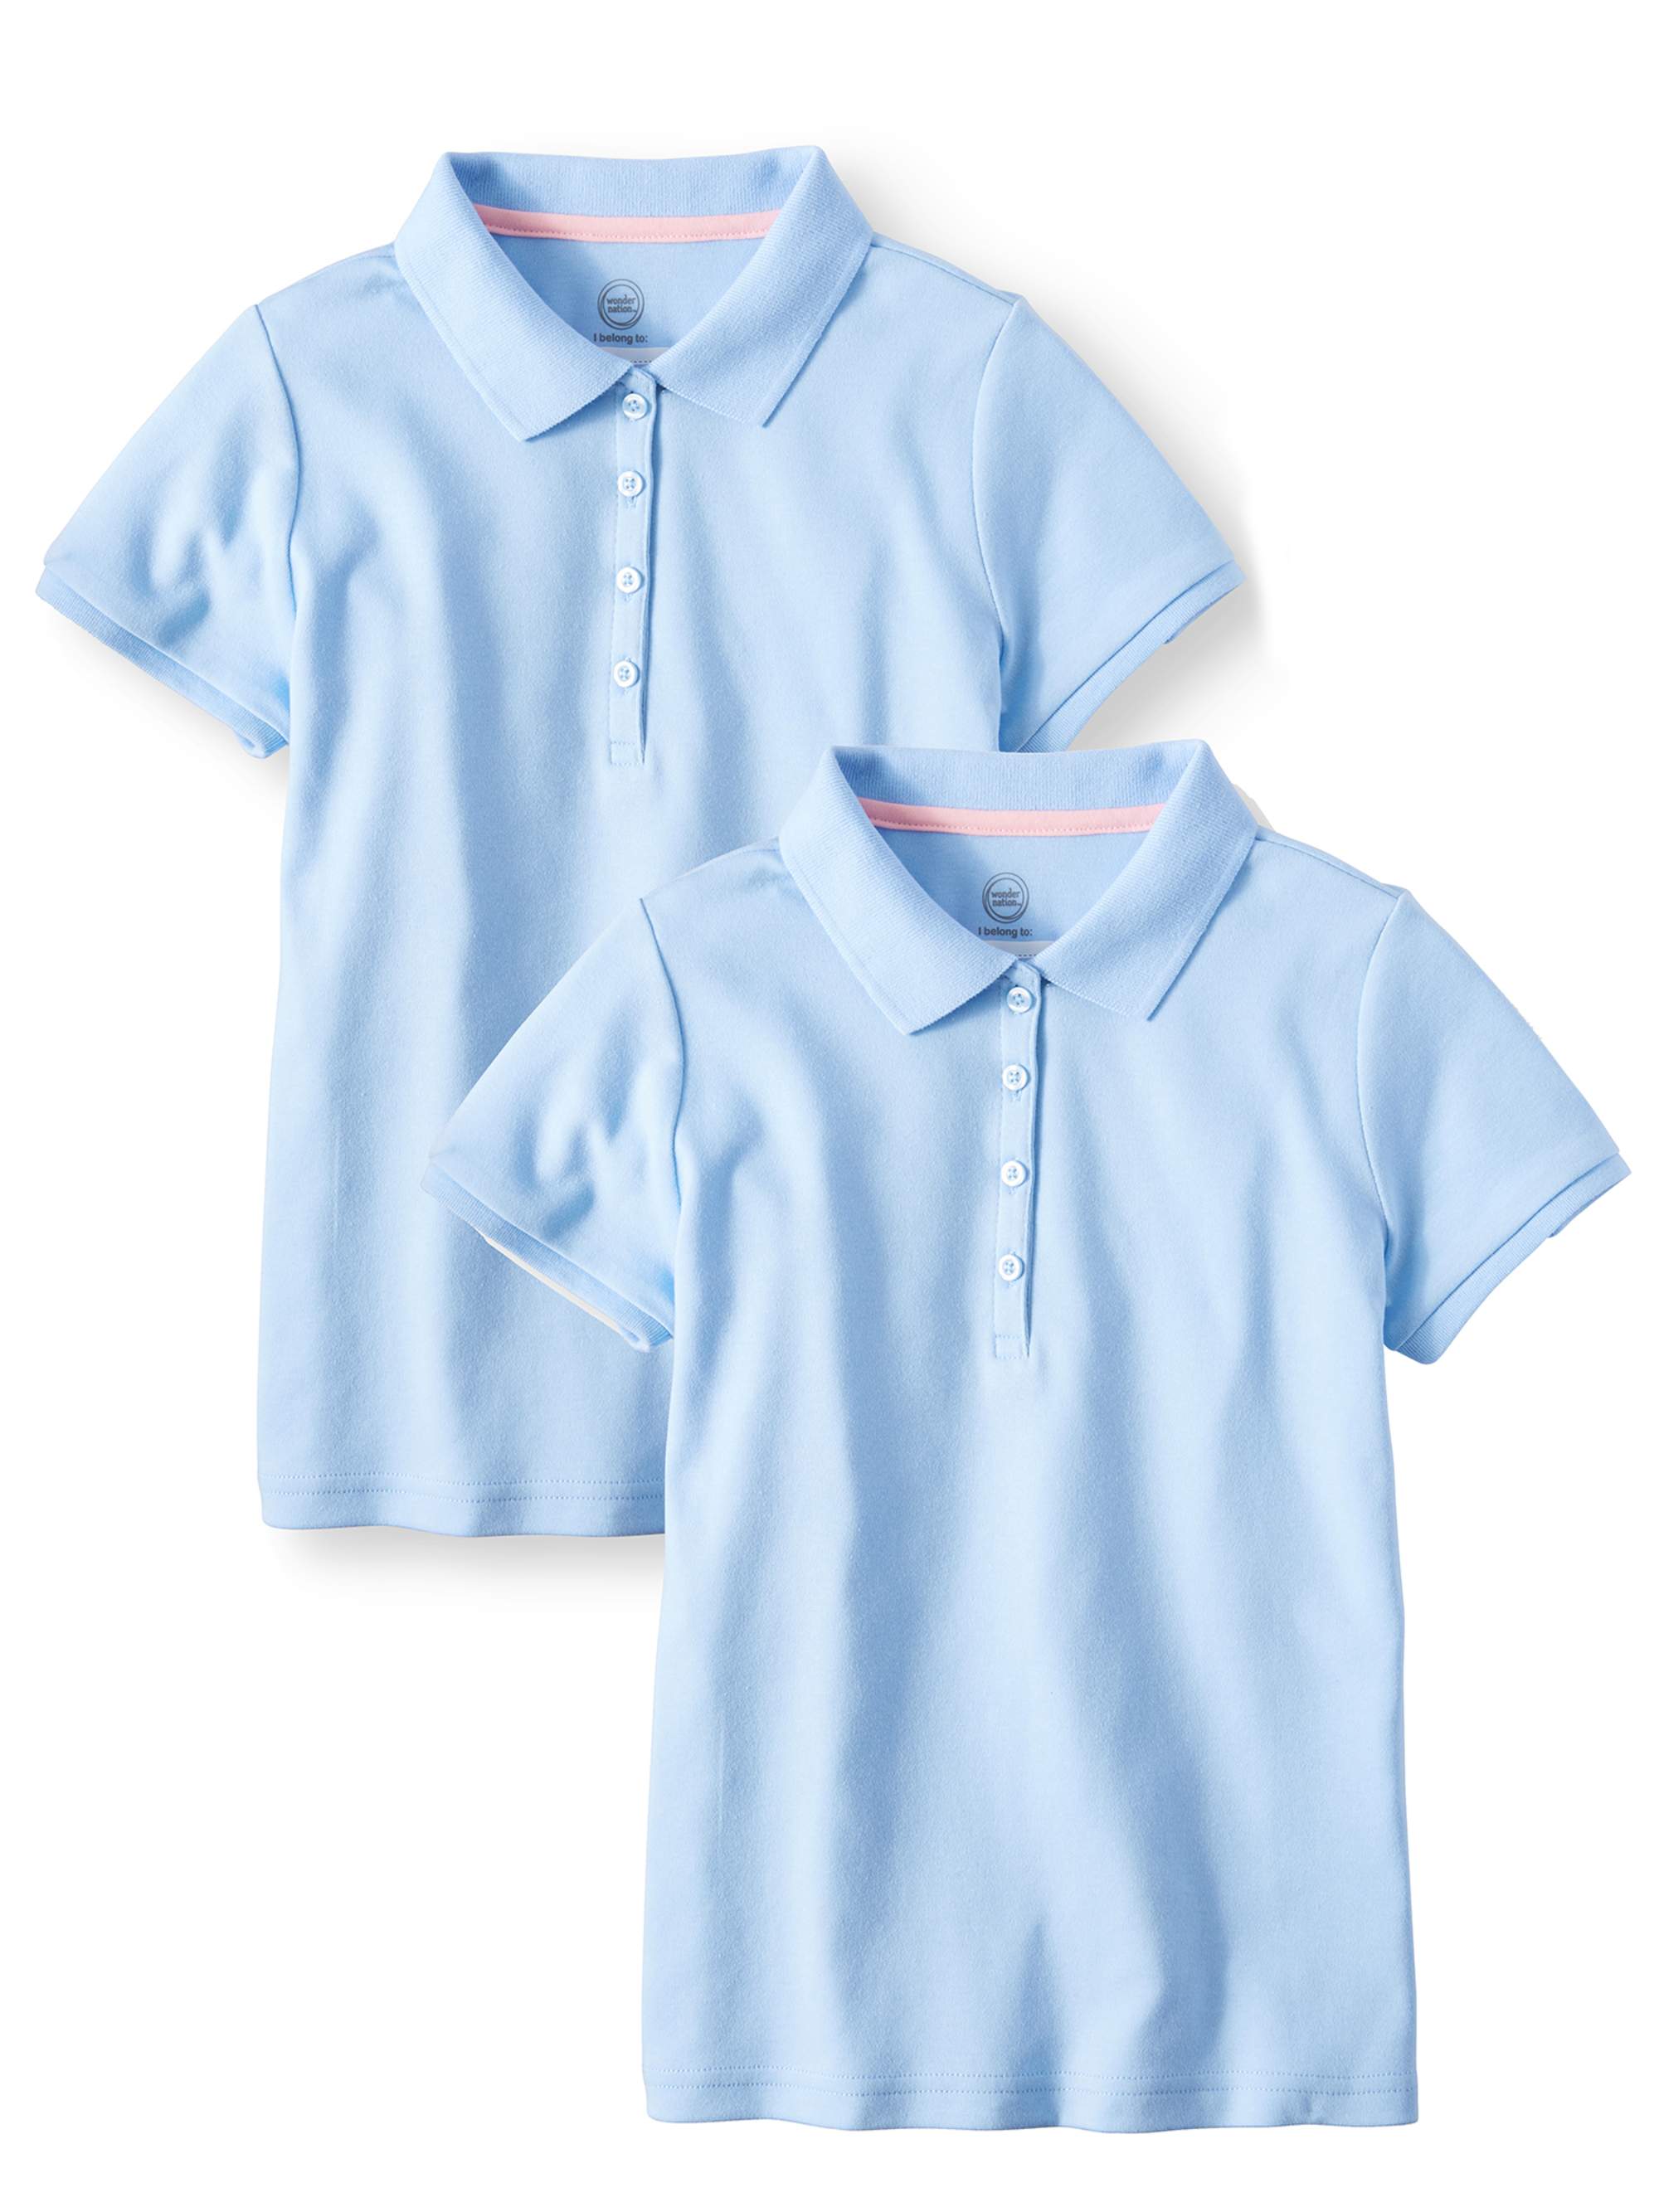 Wonder Nation Girls School Uniform Short Sleeve Interlock Polo Shirt, 2-Pack Value Bundle, Sizes 4-18 - image 1 of 1